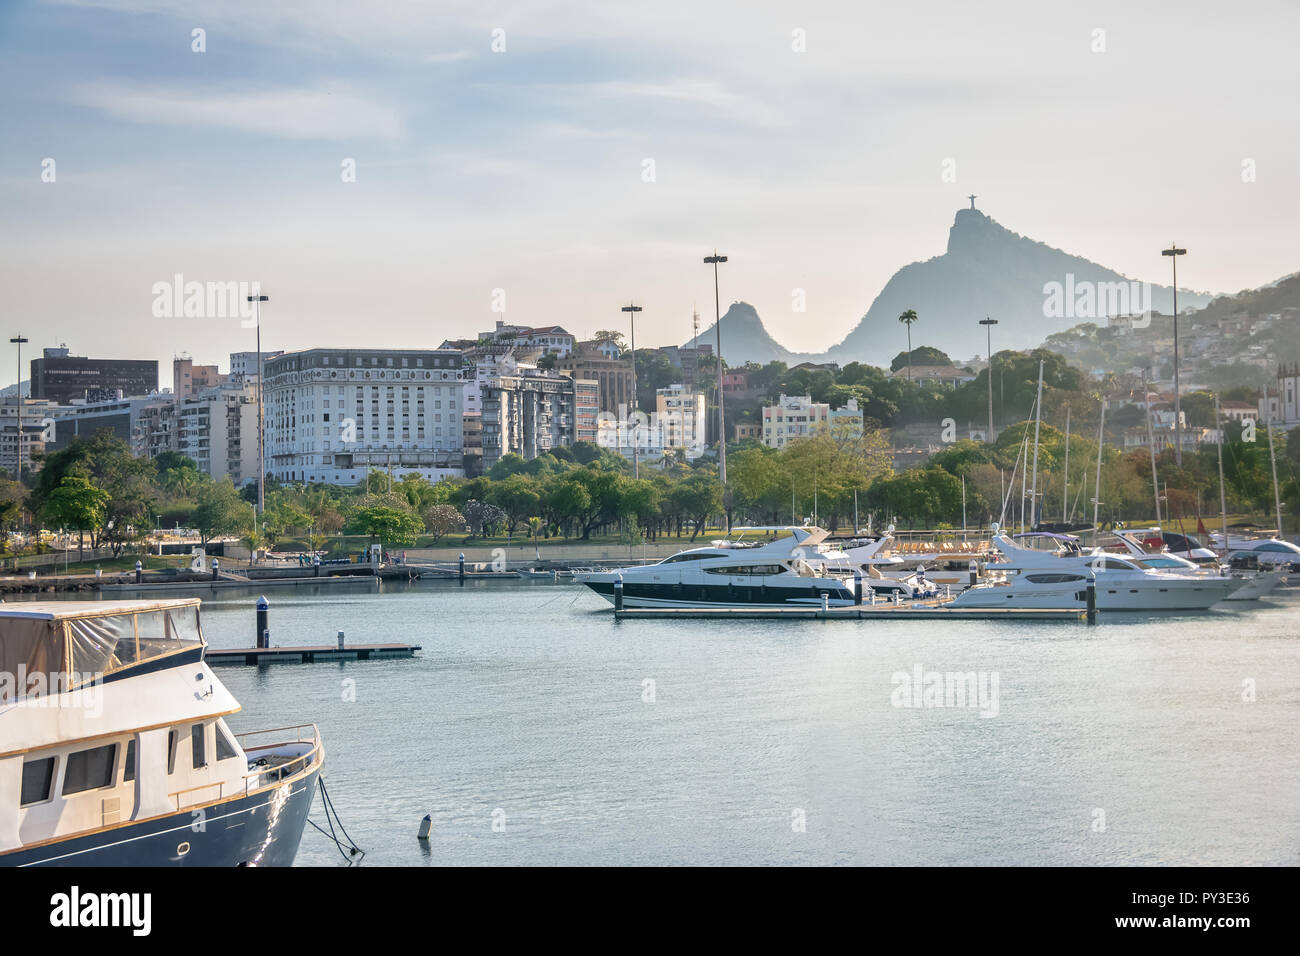 Marina da Gloria Bateaux et en arrière plan la montagne du Corcovado - Rio de Janeiro, Brésil Banque D'Images